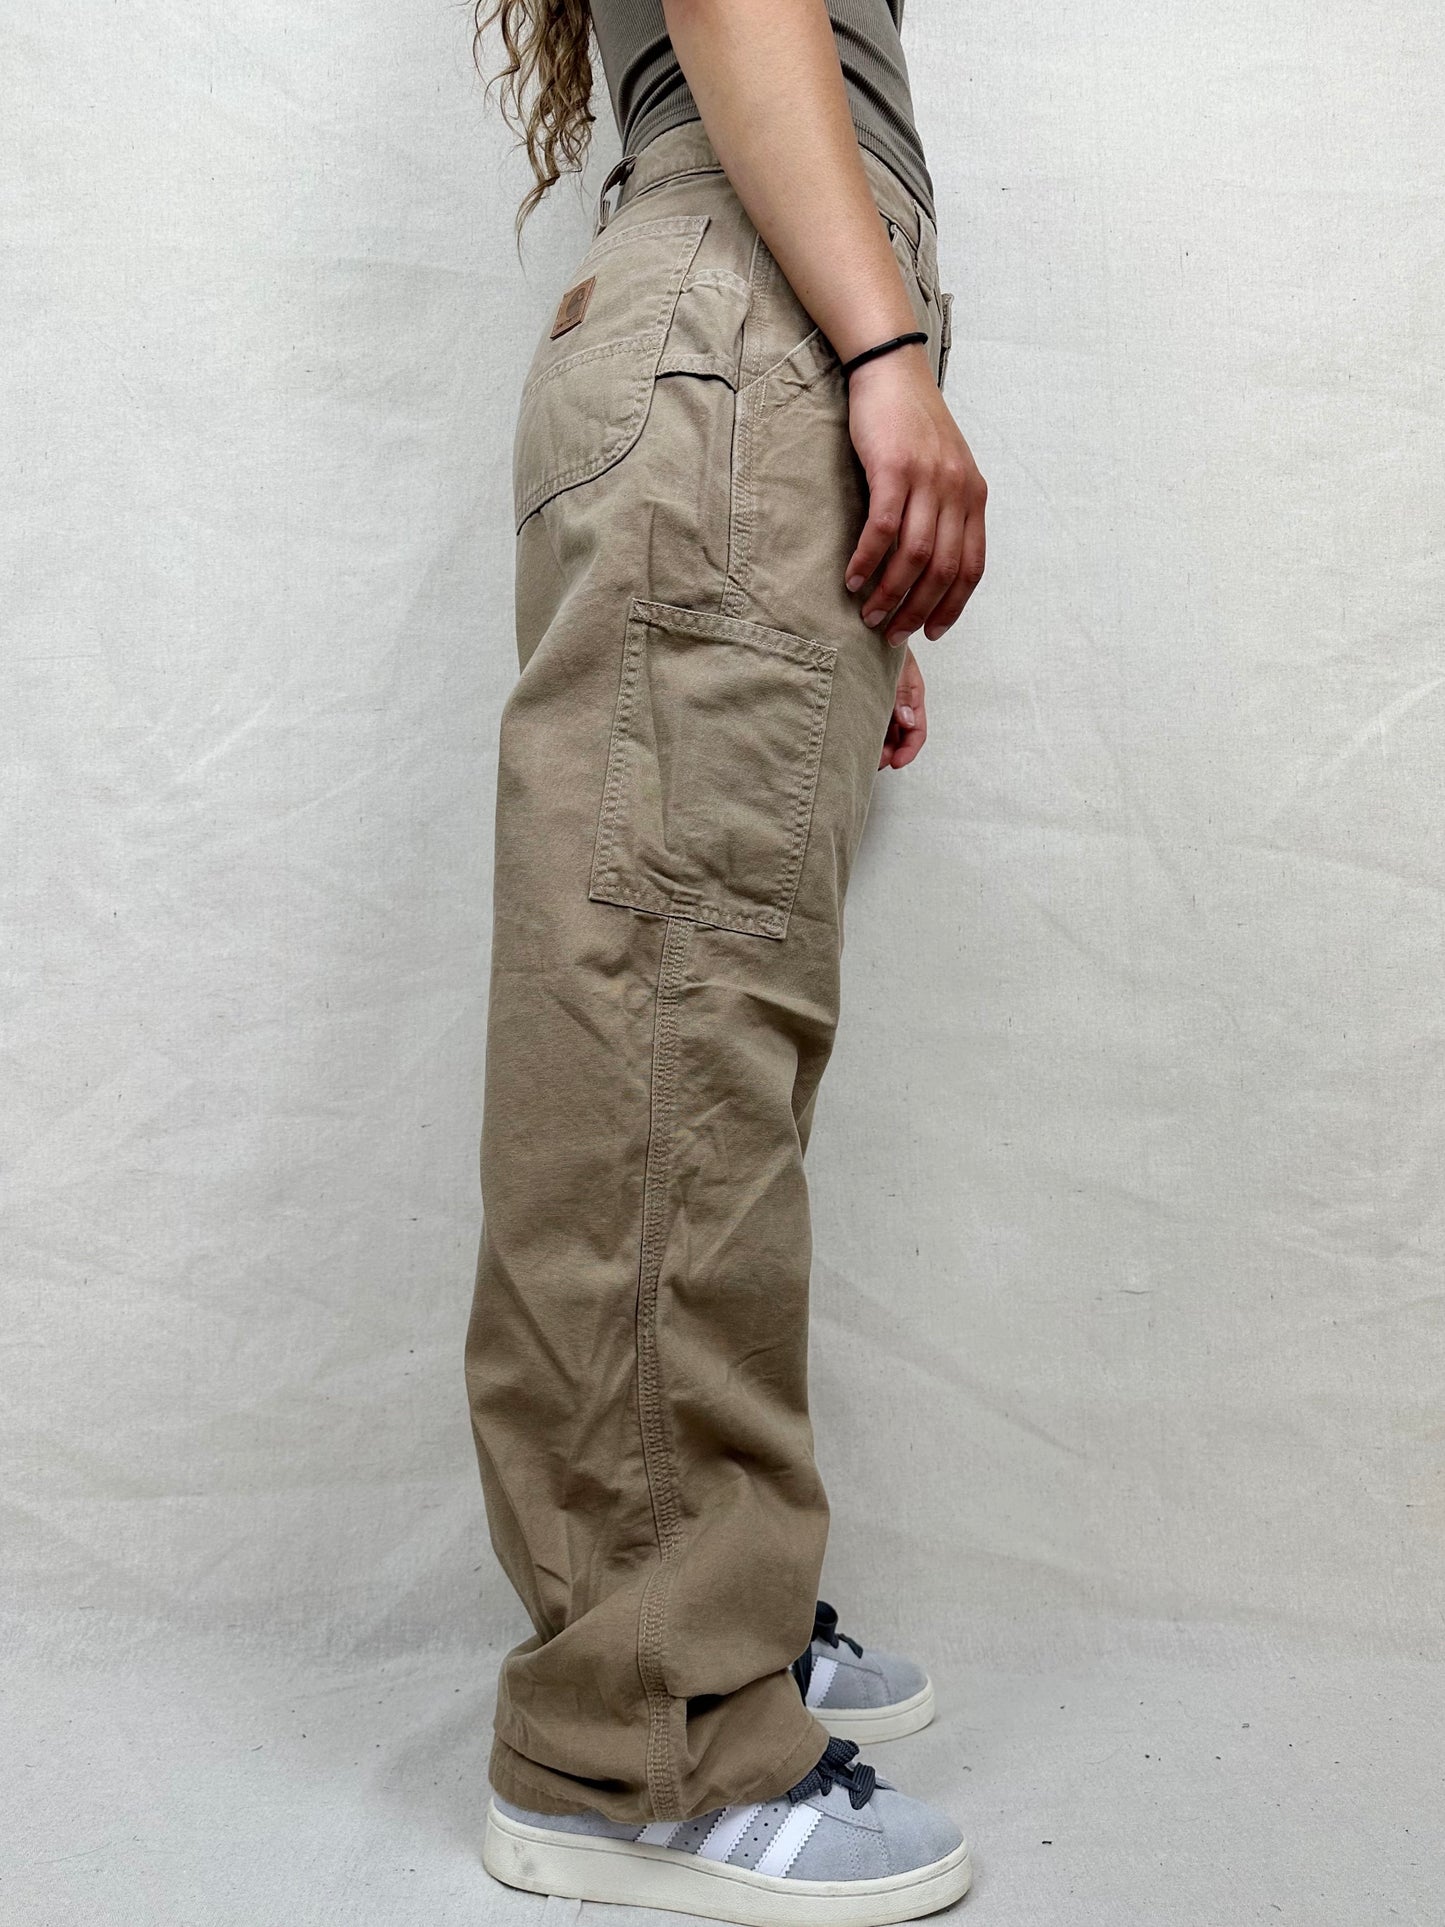 90's Carhartt Vintage Carpenter Pants Size 29x30